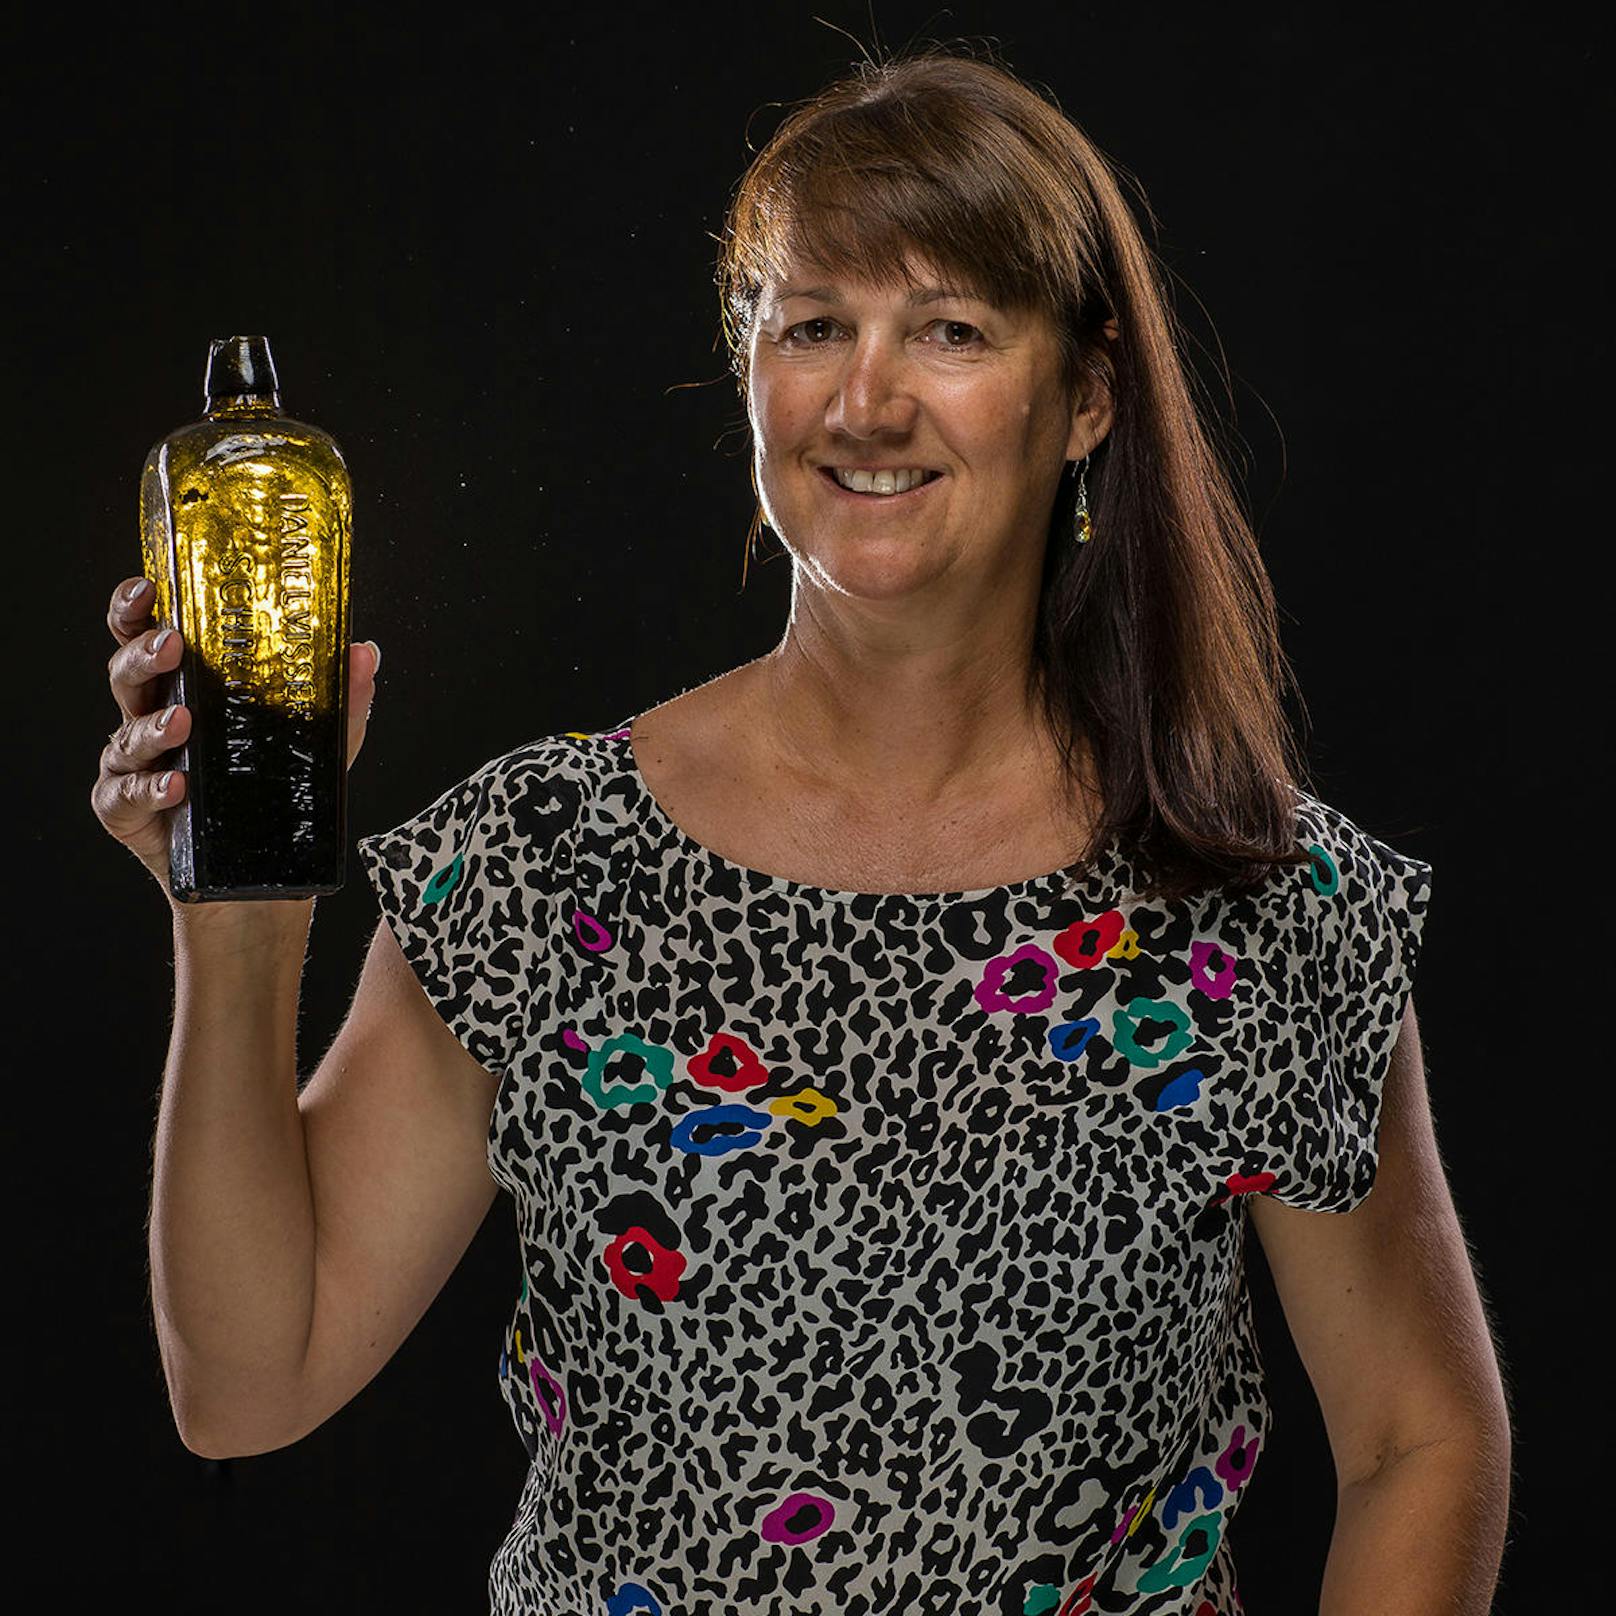 Tonya Illman fand die Flasche am 21.1.18 am Strand vom australischen Perth.